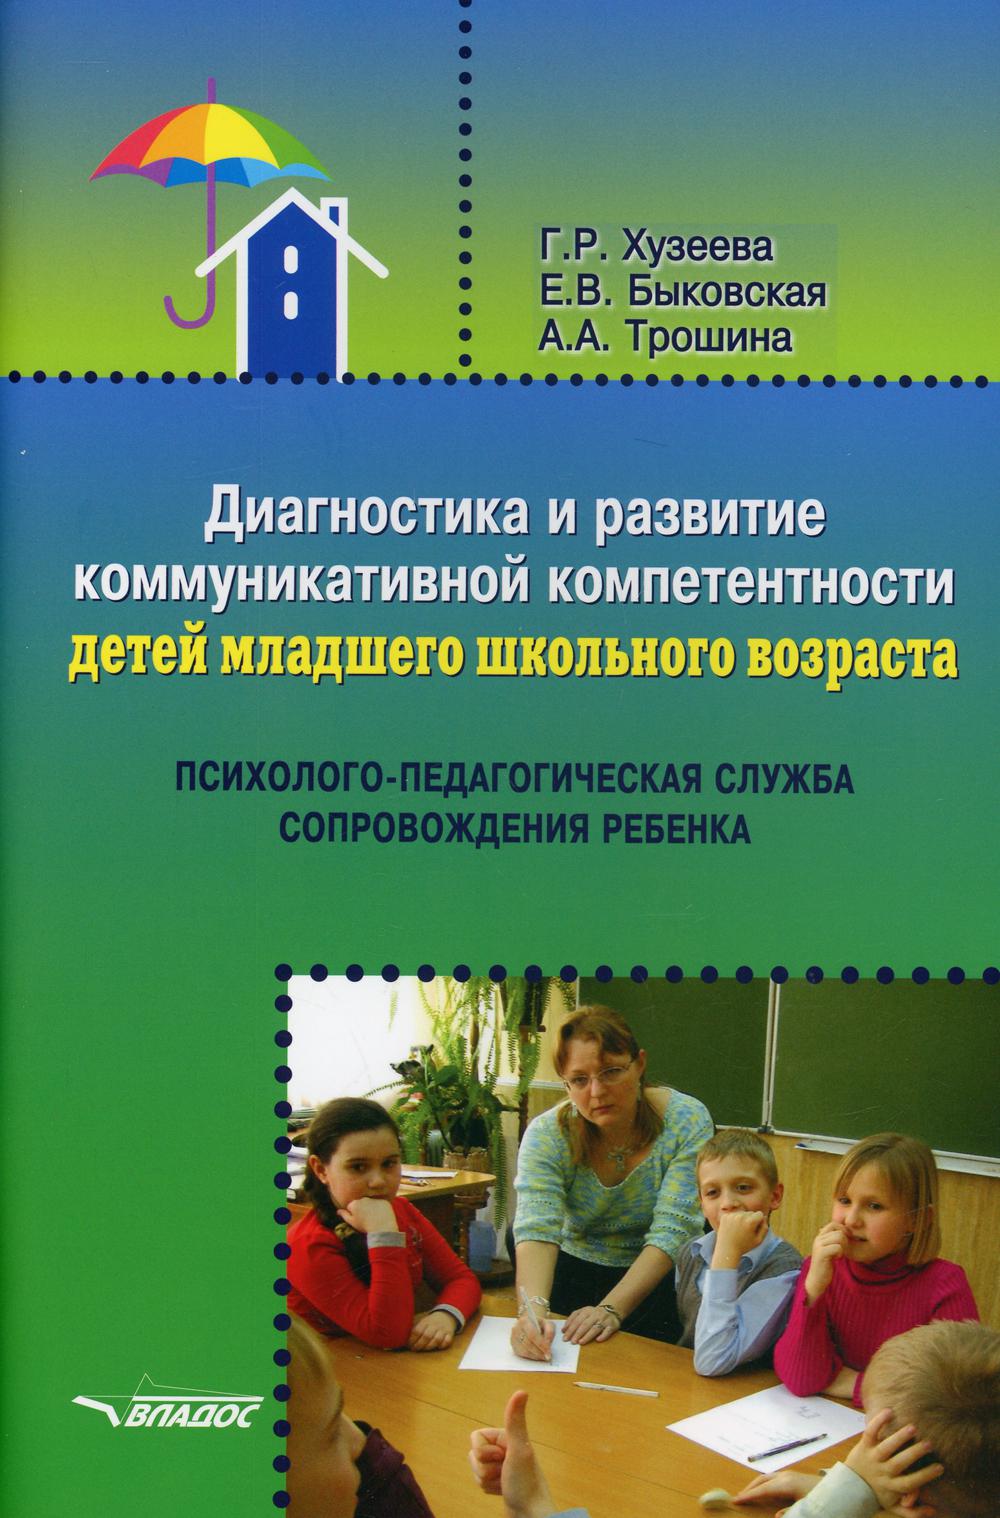 фото Книга диагностика и развитие коммуникативной компетентности детей младшего школьного во... владос